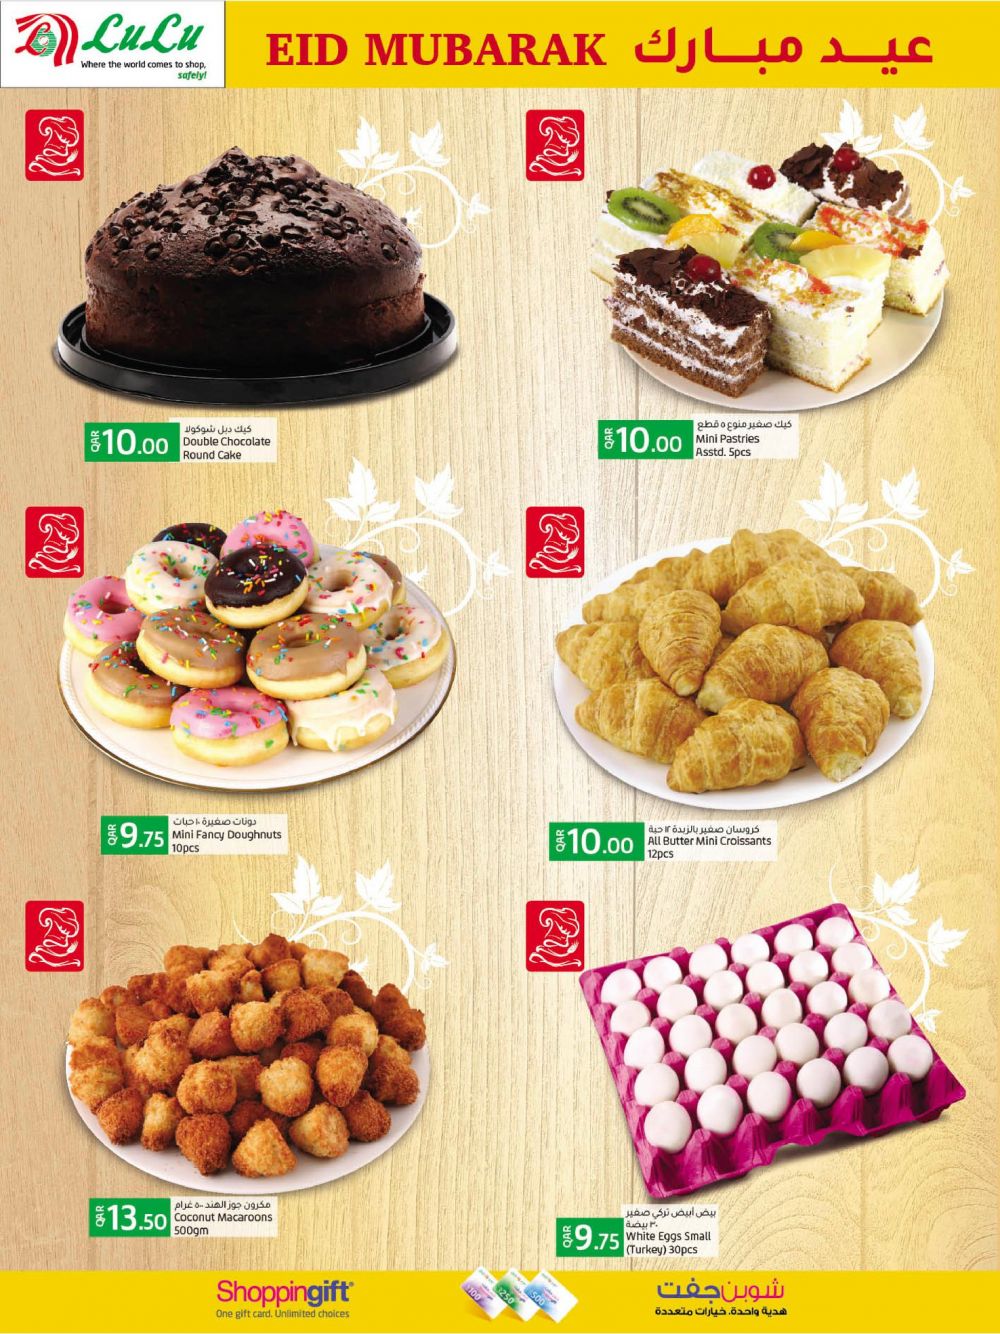 Taste Cakes, Kochi - Order Online